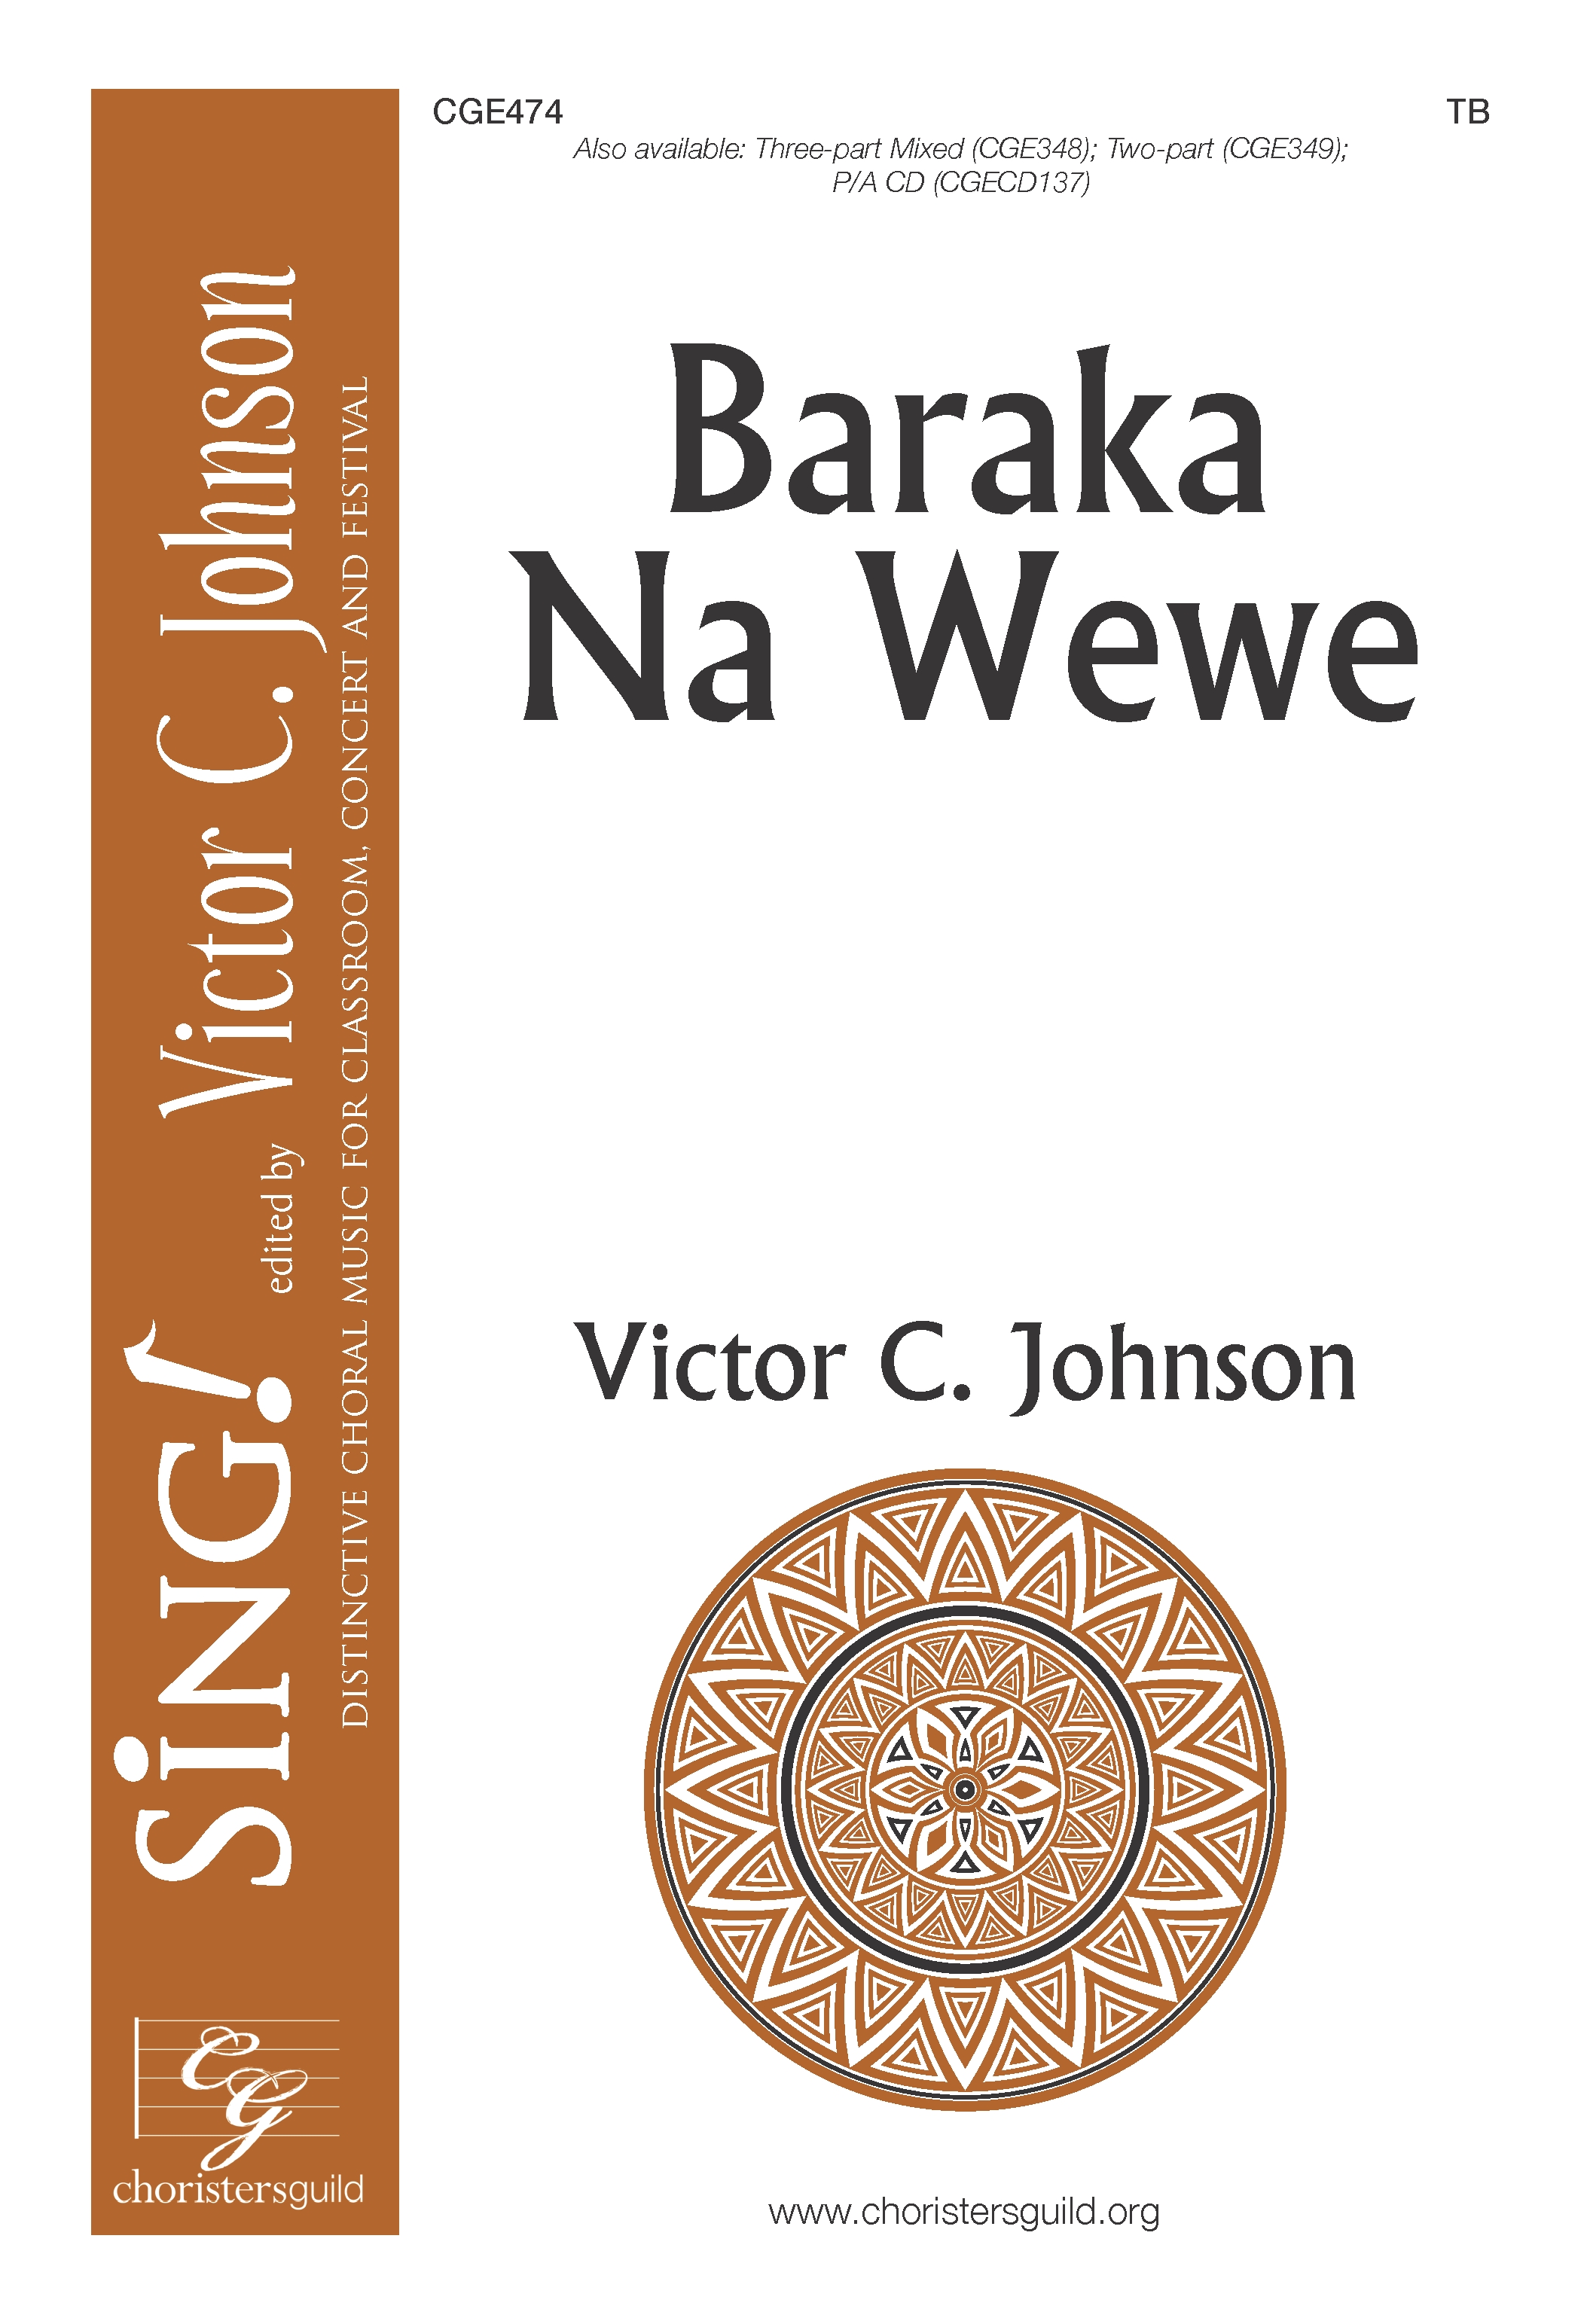 Baraka Na Wewe - TB